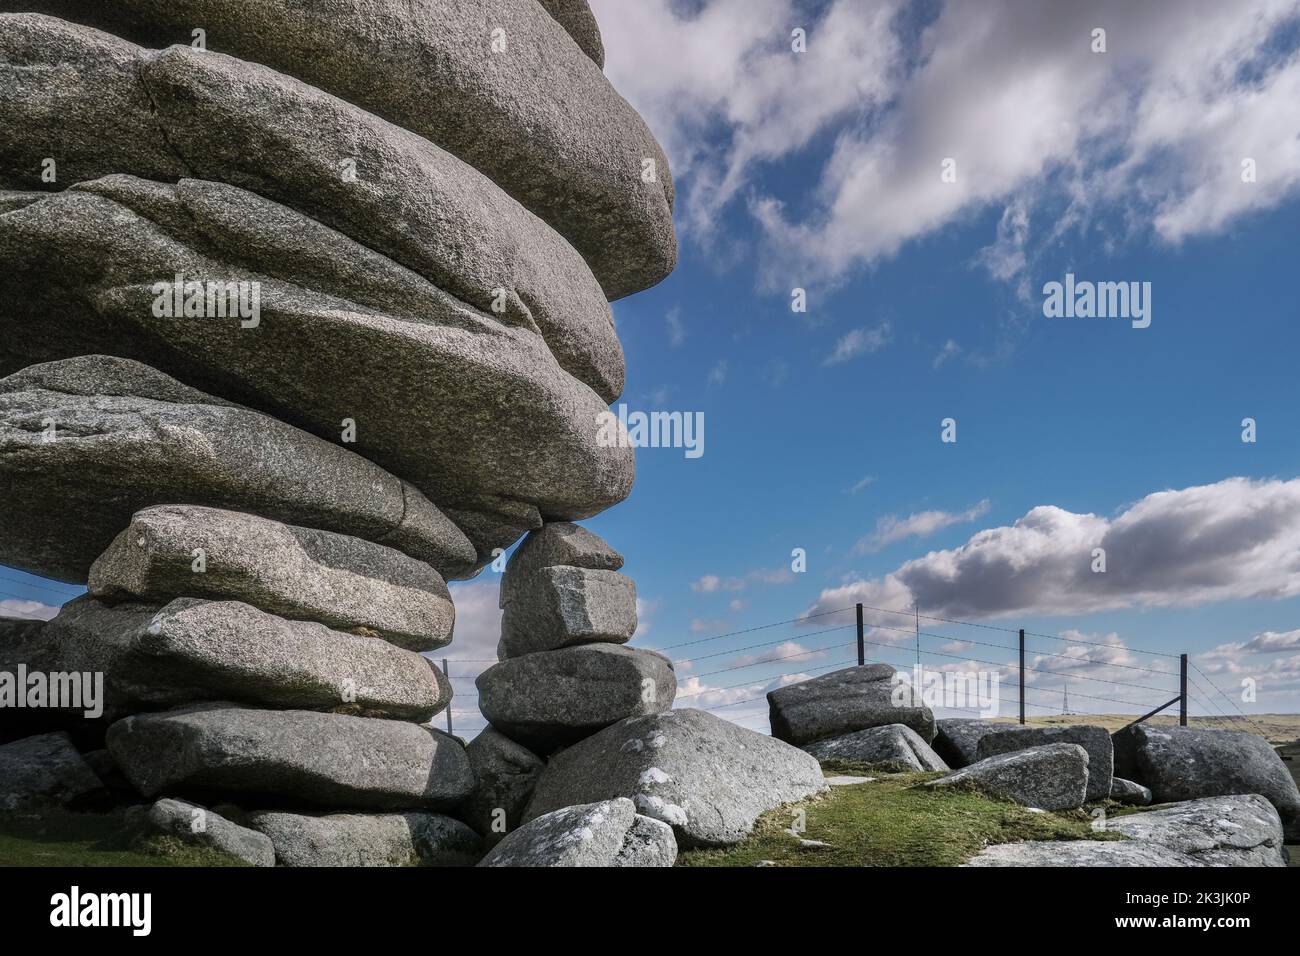 Le Cheesewring. Une imposante pile de roches en granit formée par une action glaciaire sur Stowes Hill, sur Bodmin Moor, dans les Cornouailles. Banque D'Images